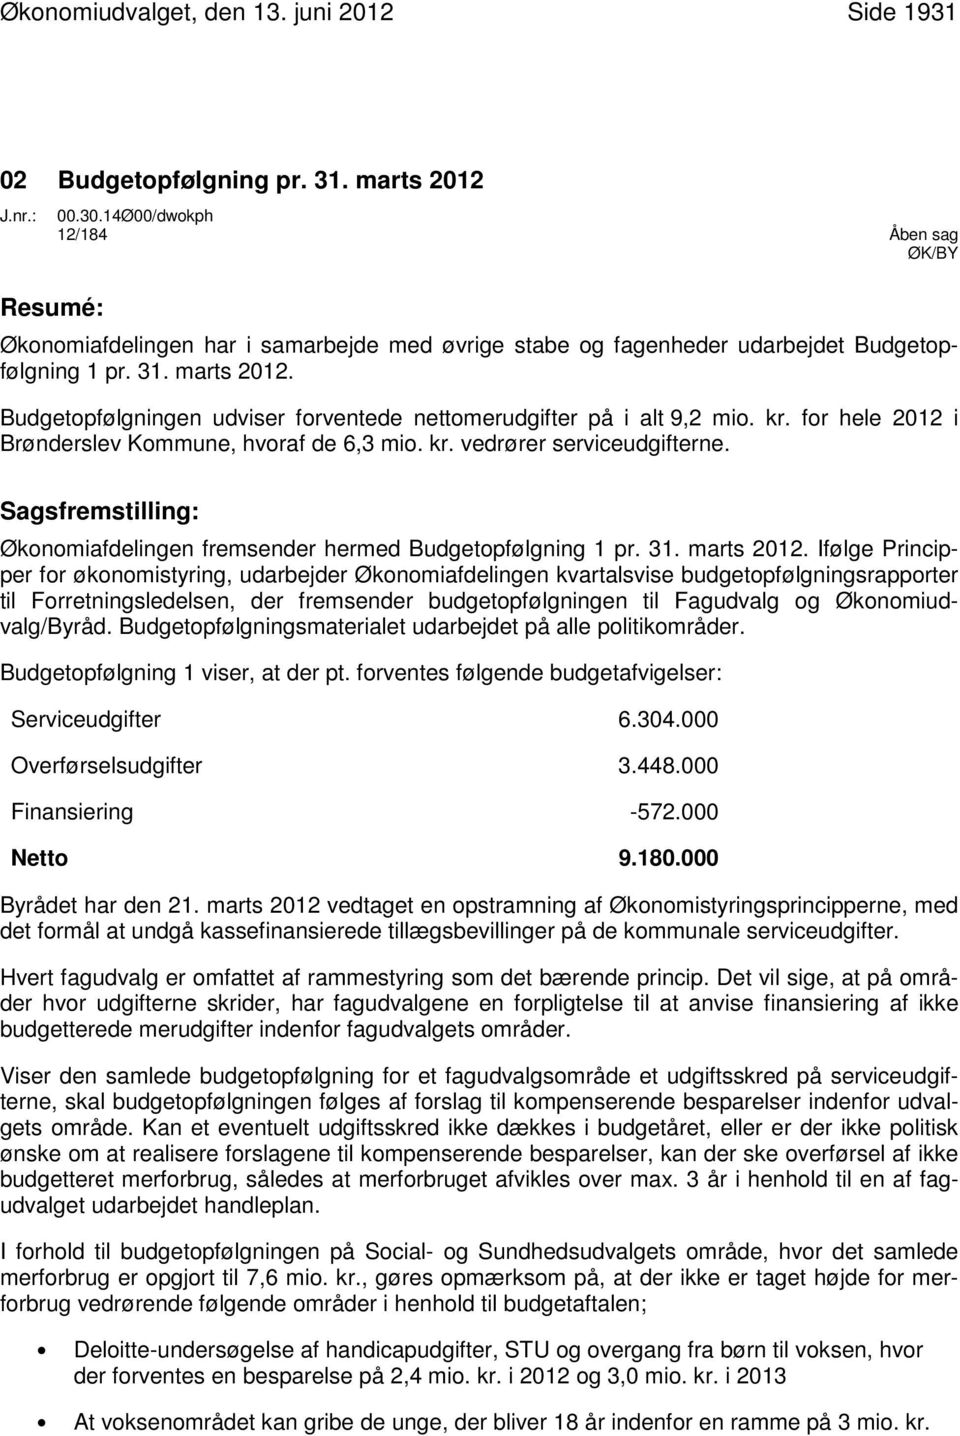 Budgetopfølgningen udviser forventede nettomerudgifter på i alt 9,2 mio. kr. for hele 2012 i Brønderslev Kommune, hvoraf de 6,3 mio. kr. vedrører serviceudgifterne.